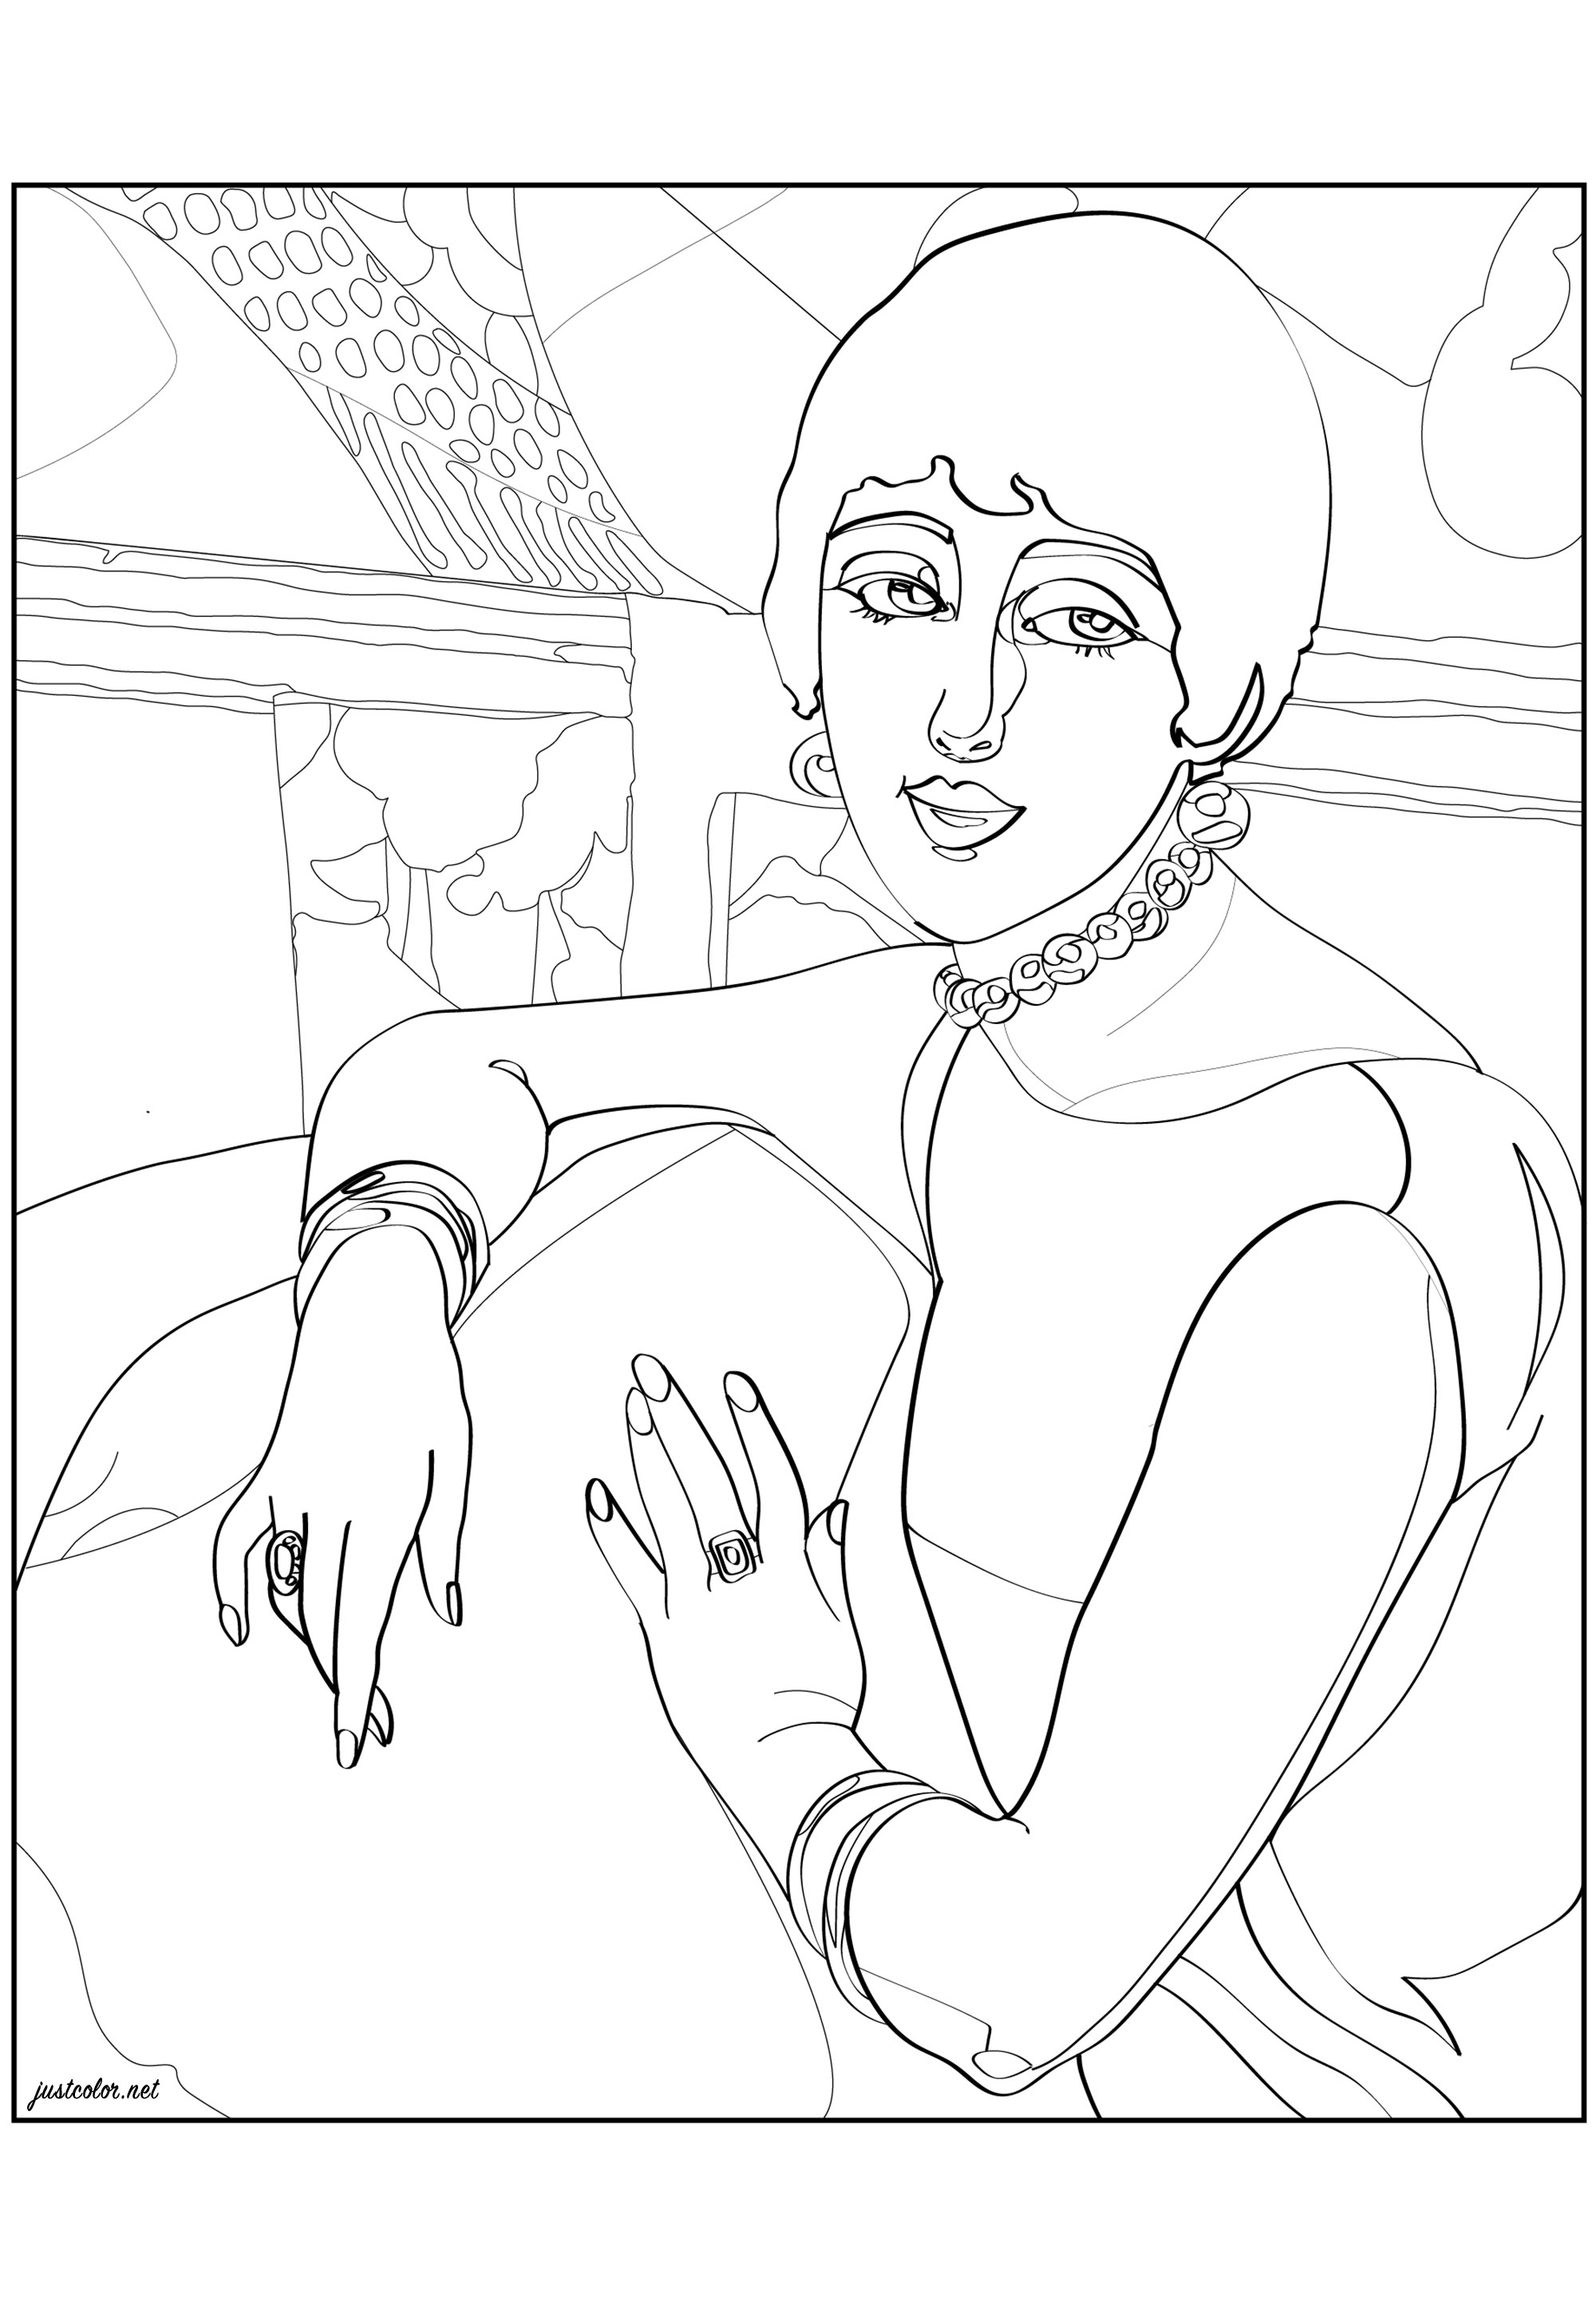 Coloriage créé à partir de 'Lily' par Gerda Webener (1922). Gerda Wegener (illustratrice et peintre danoise) est connue pour ses illustrations de mode au style Art Déco et parfois Art Nouveau, ainsi que pour ses peintures qui ont repoussé les limites du genre et de l'amour de son temps. Ces œuvres ont parfois été classées comme érotiques et lesbiennes, et beaucoup ont été inspirées par sa partenaire, la femme transgenre Lili Elbe, Artiste : Morgan